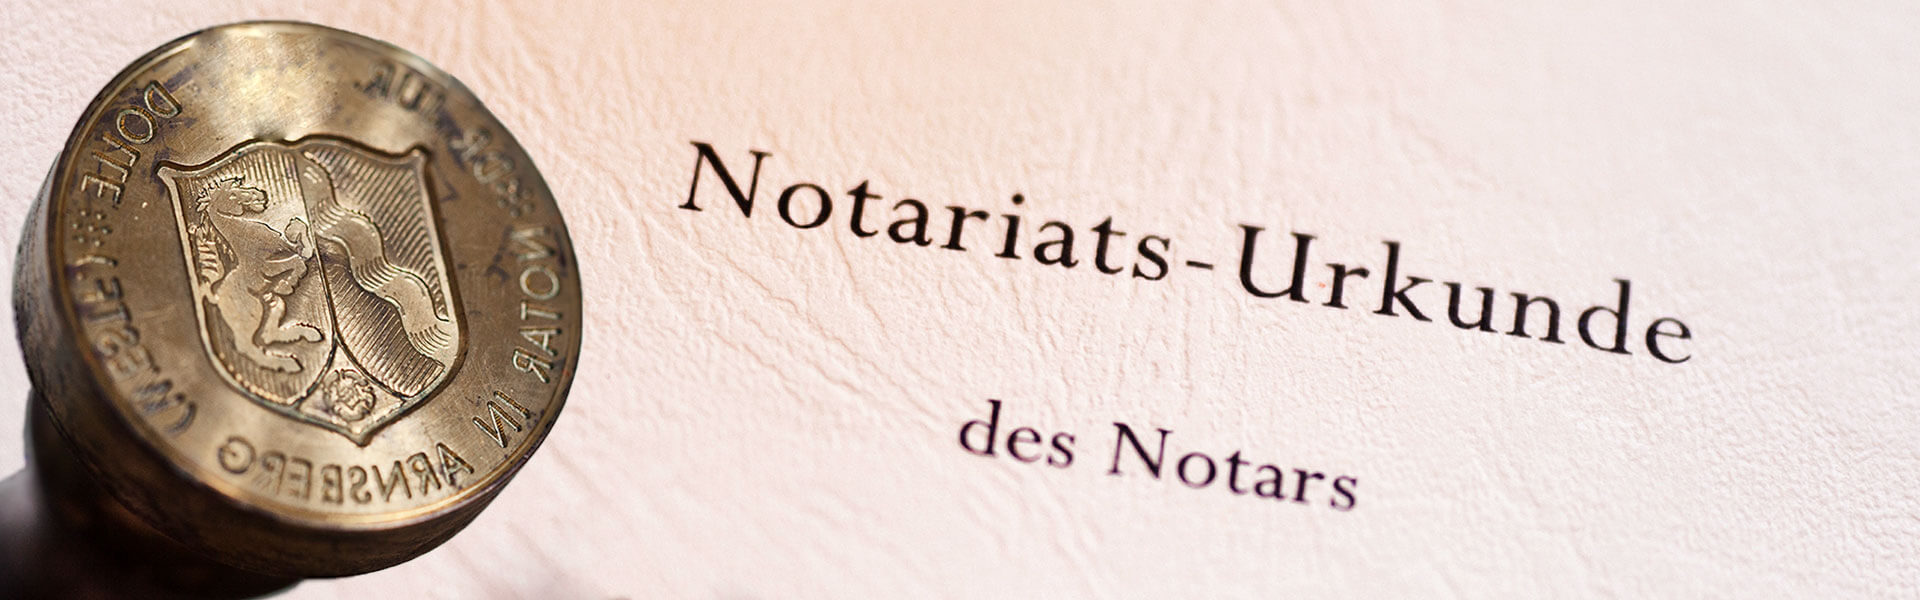 Notariat